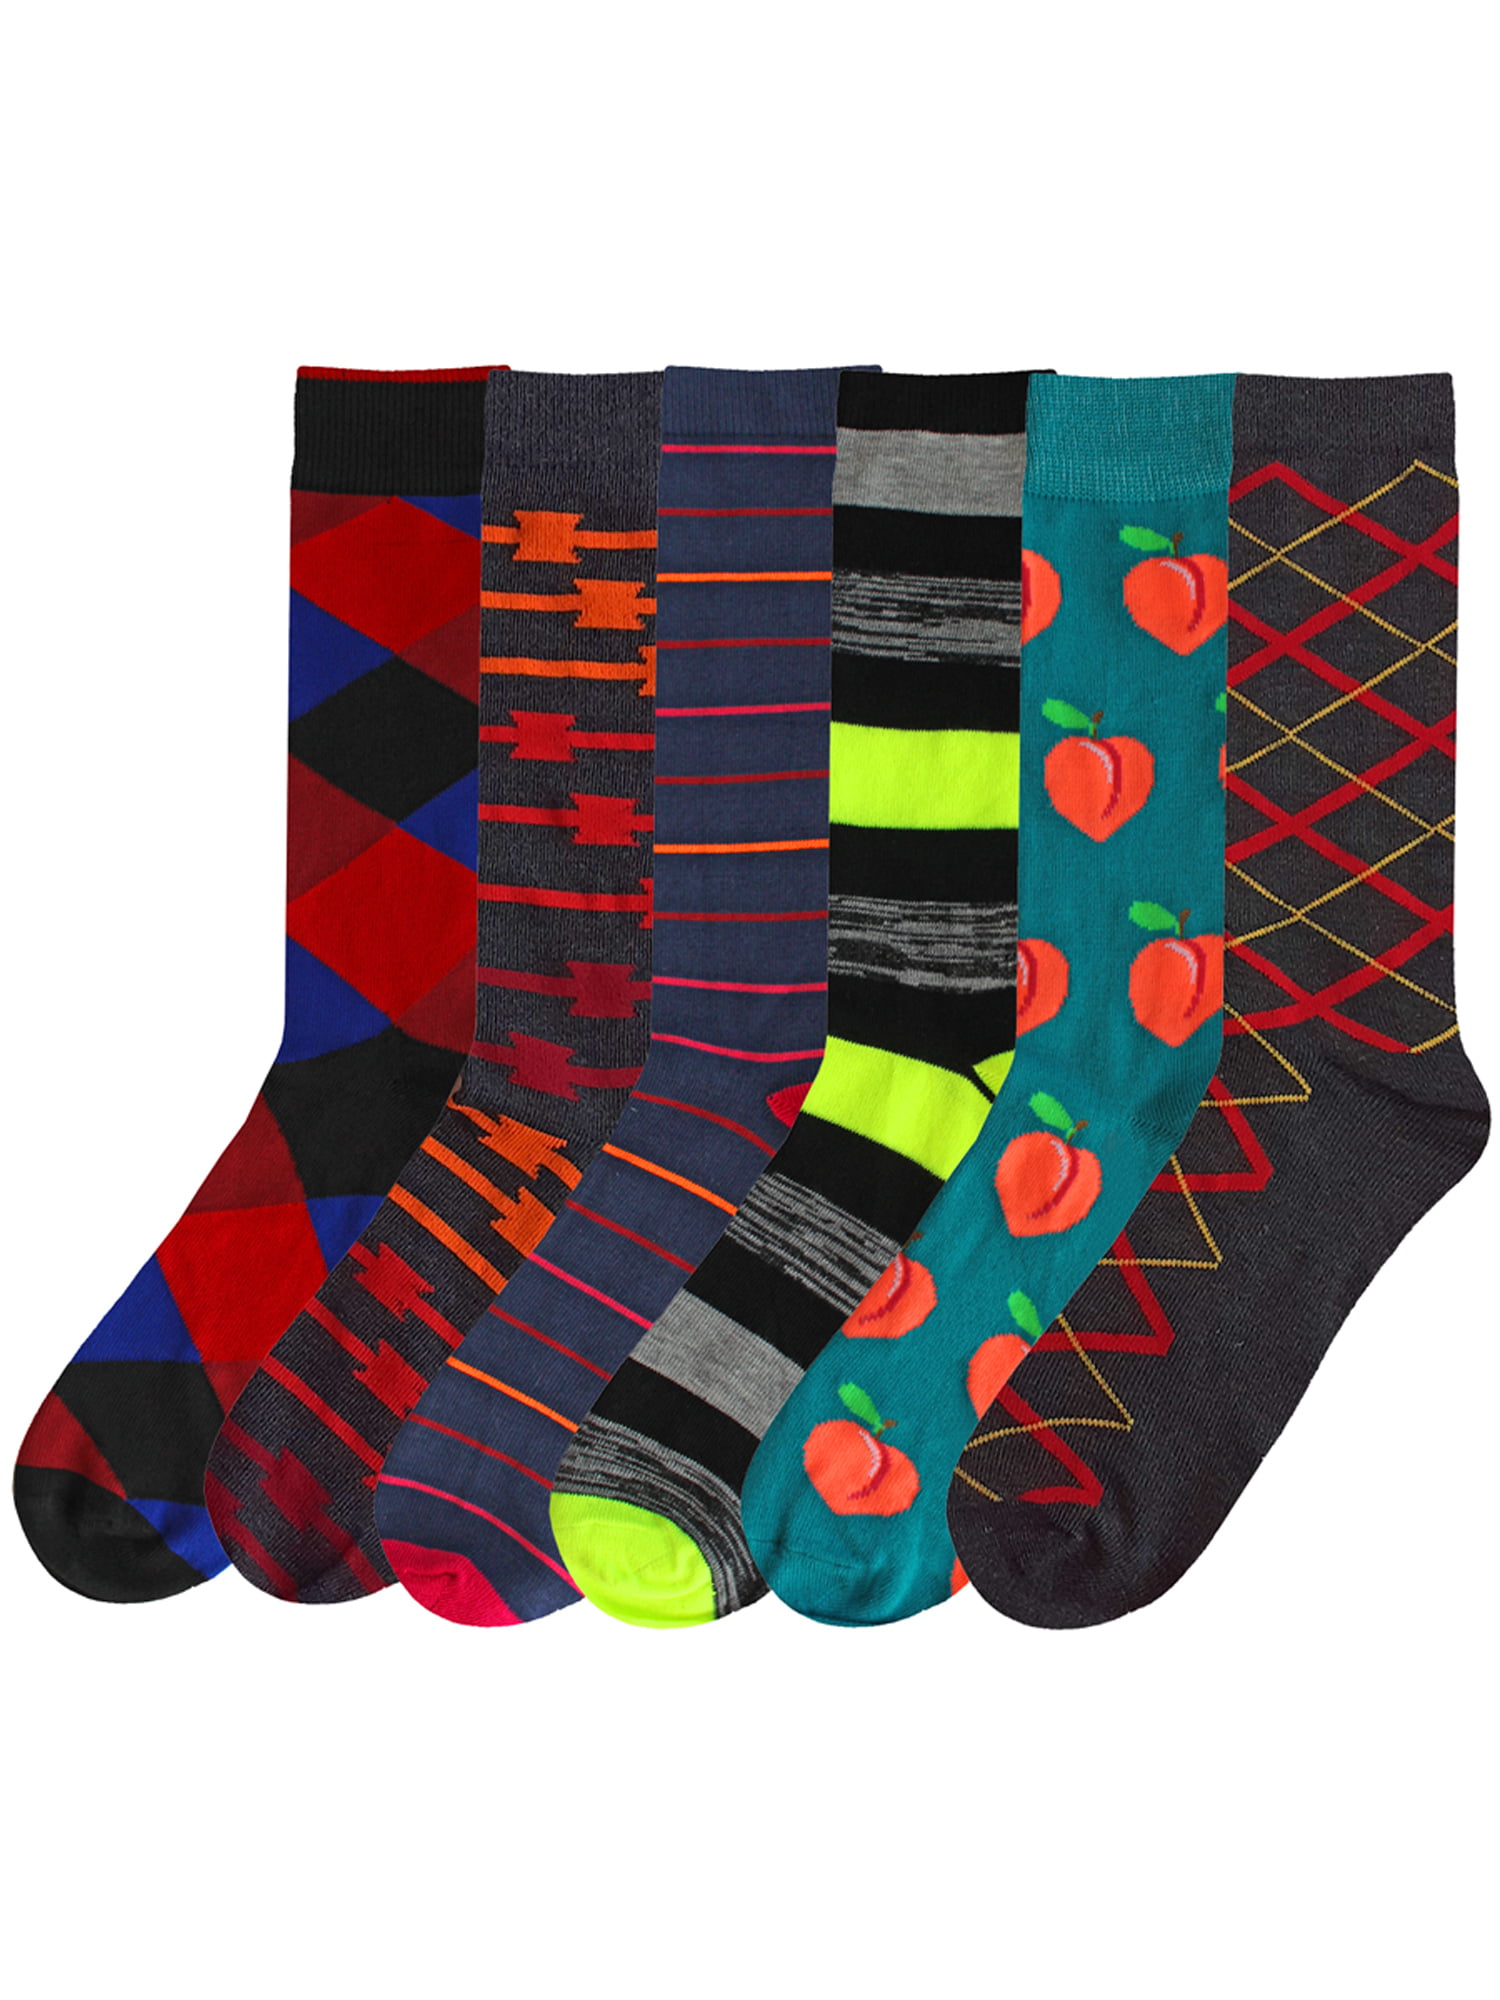 6 Pairs Cotton Funky Novelty Patterned Calf Socks Luxury Design Dress Socks for Men 